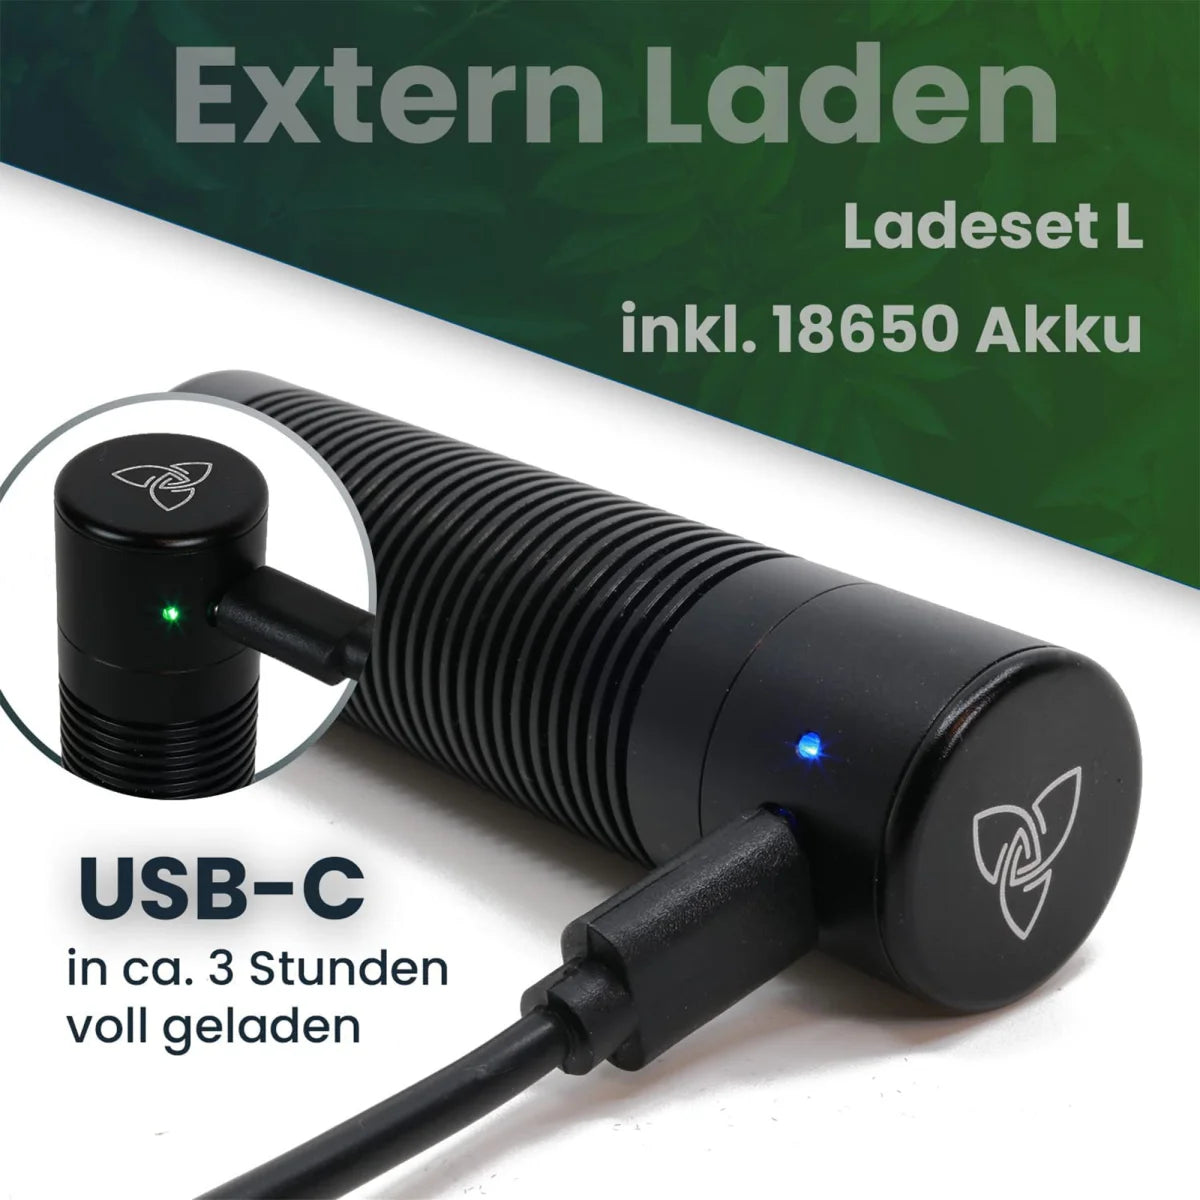 USB-C Ladeset für 18650 Batterien inkl. Batterie und Batteriefach